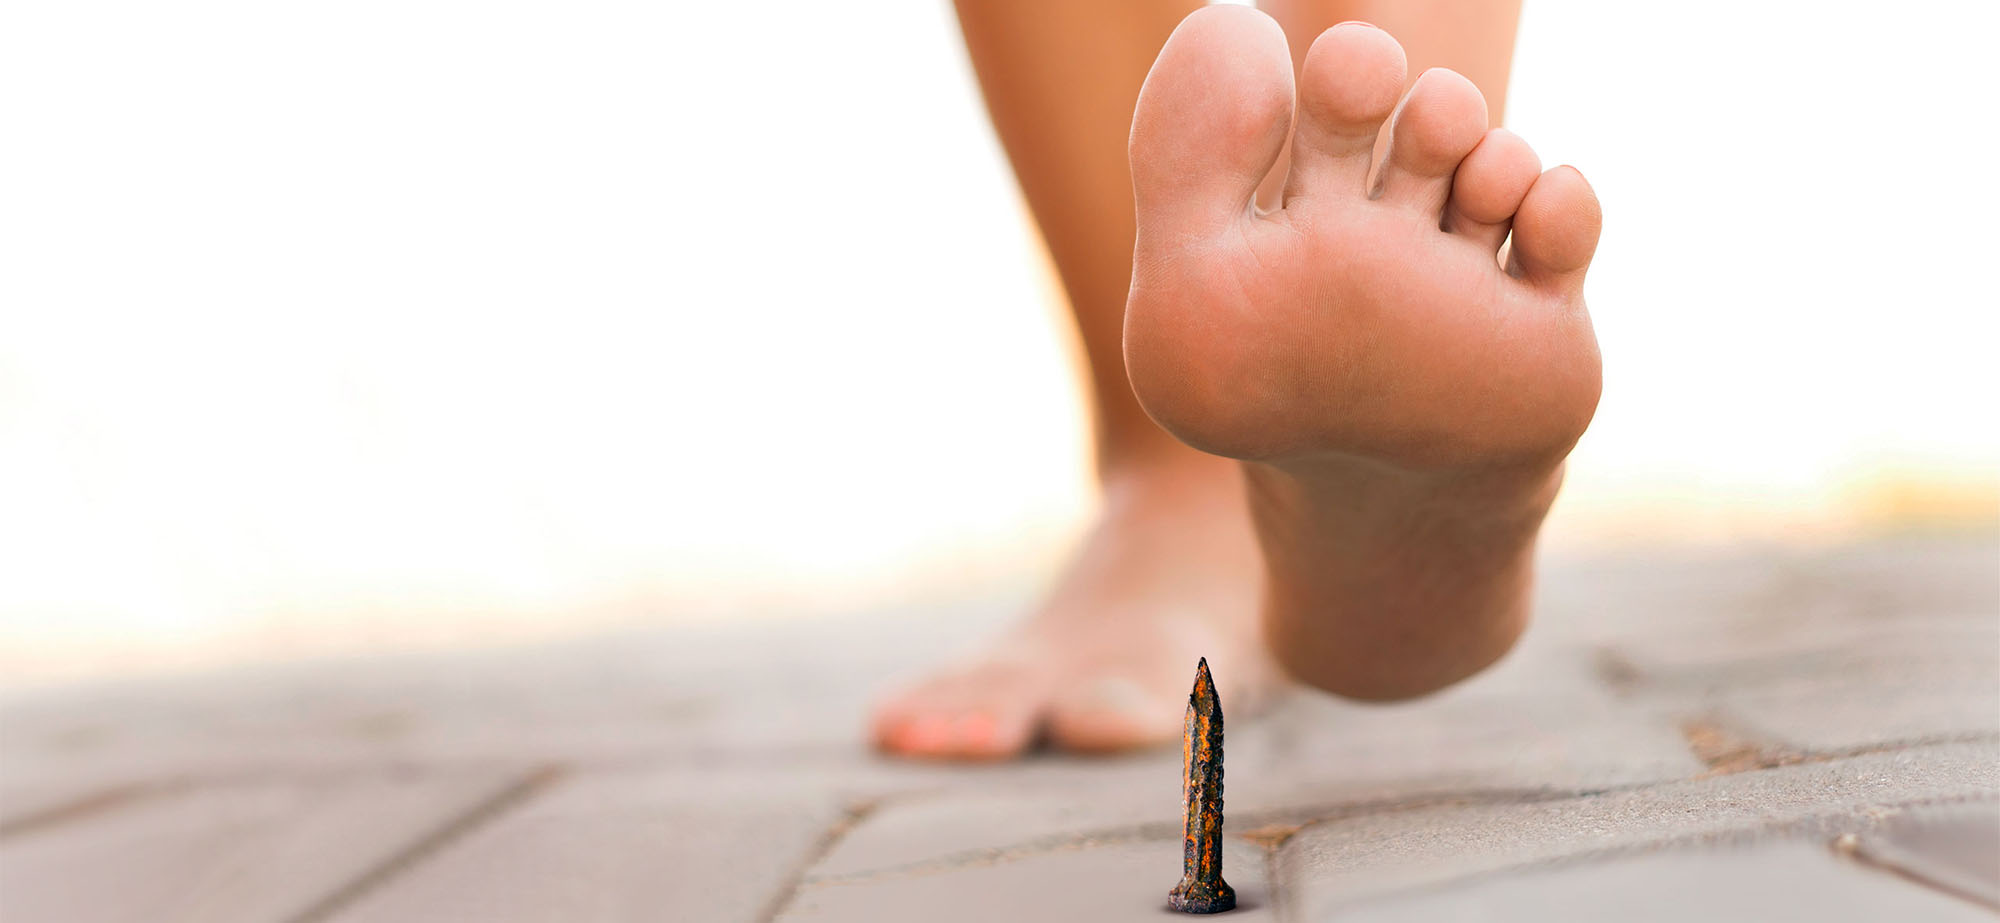 Nakter Fuß kurz vor dem Treten auf einen rostigen Nagel.